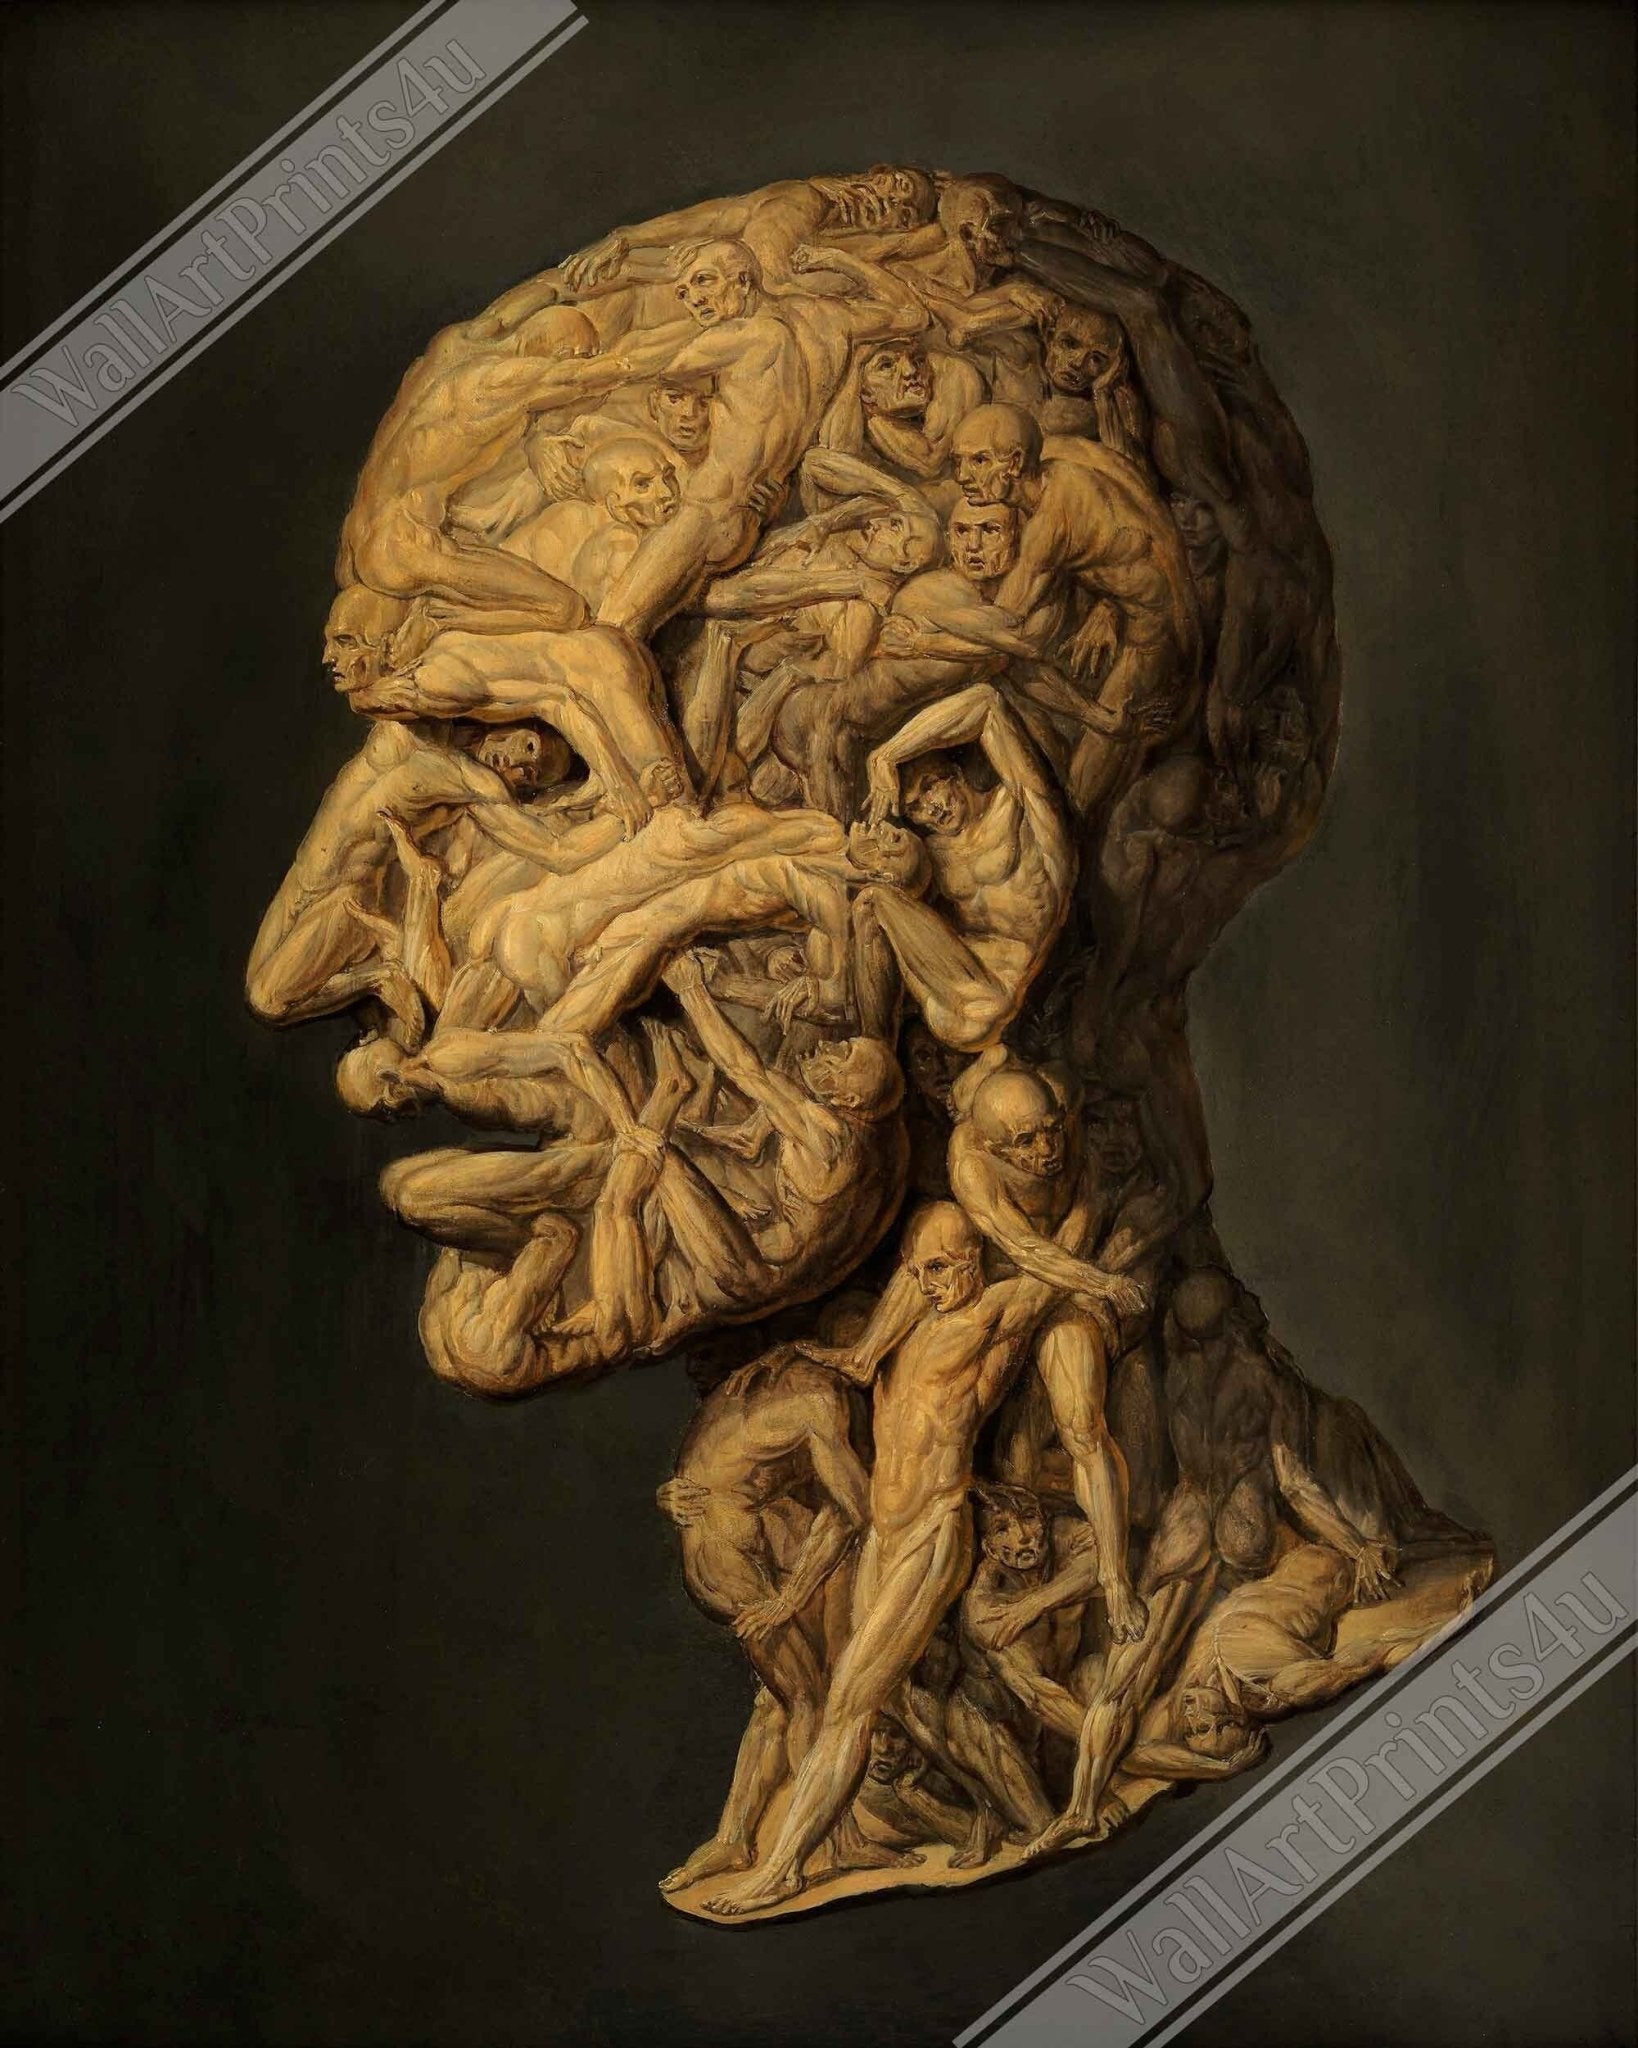 Testa Anatomica Framed Print - Head Made From Nude Figures Wrestling - Testa Anatomica Framed Filippo Baldi UK, EU USA Domestic Shipping - WallArtPrints4U